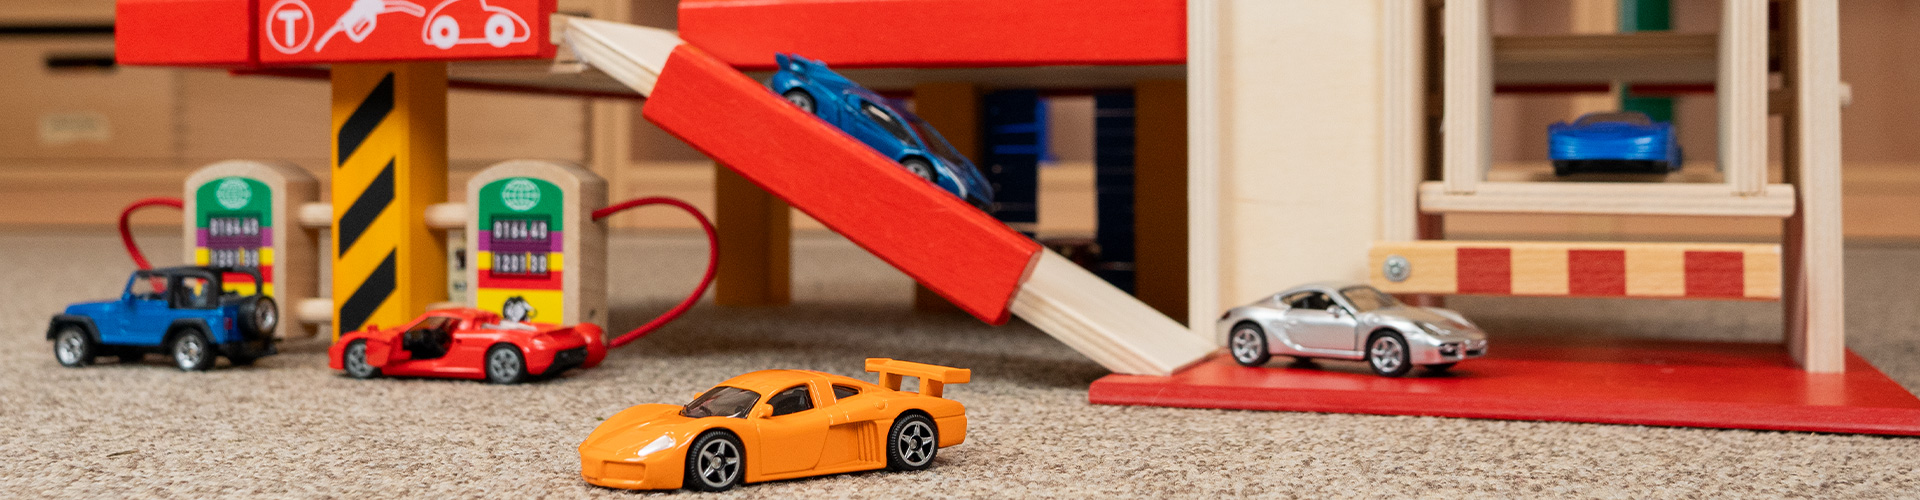 Parkhäuser und Spielzeugautos 